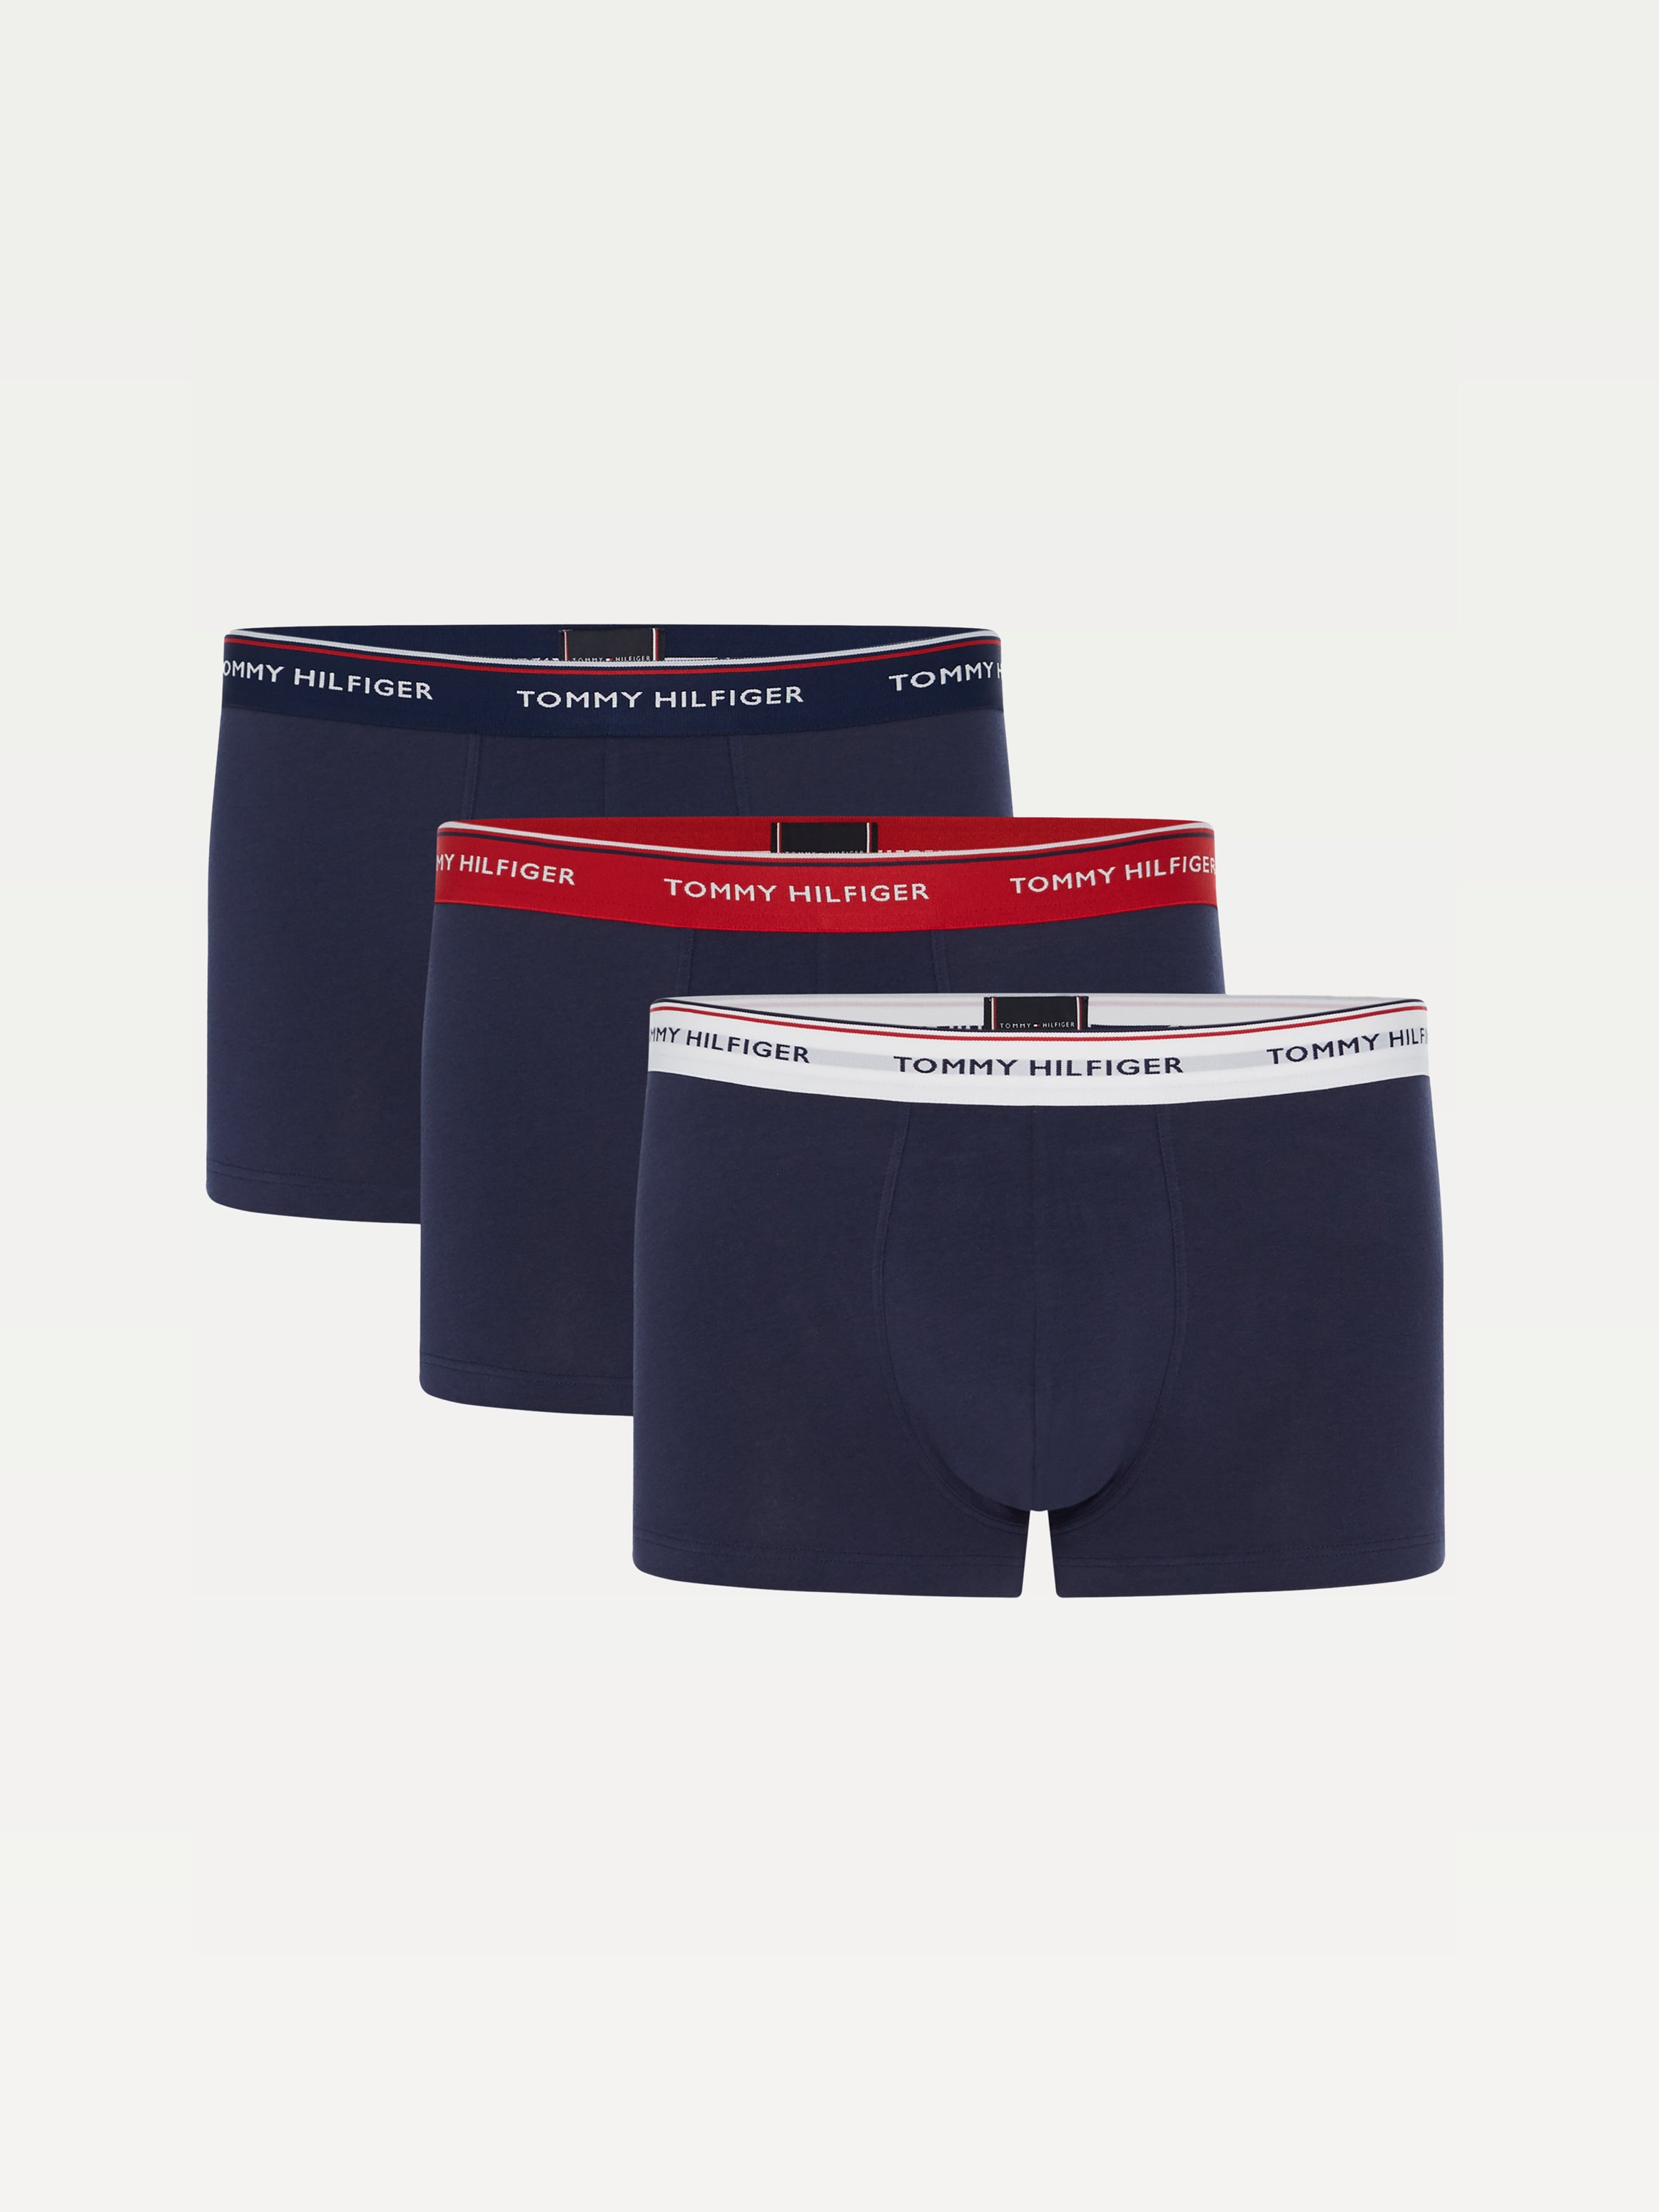 Men's Underwear | Men's Designer Boxers & Briefs | McKenna Man